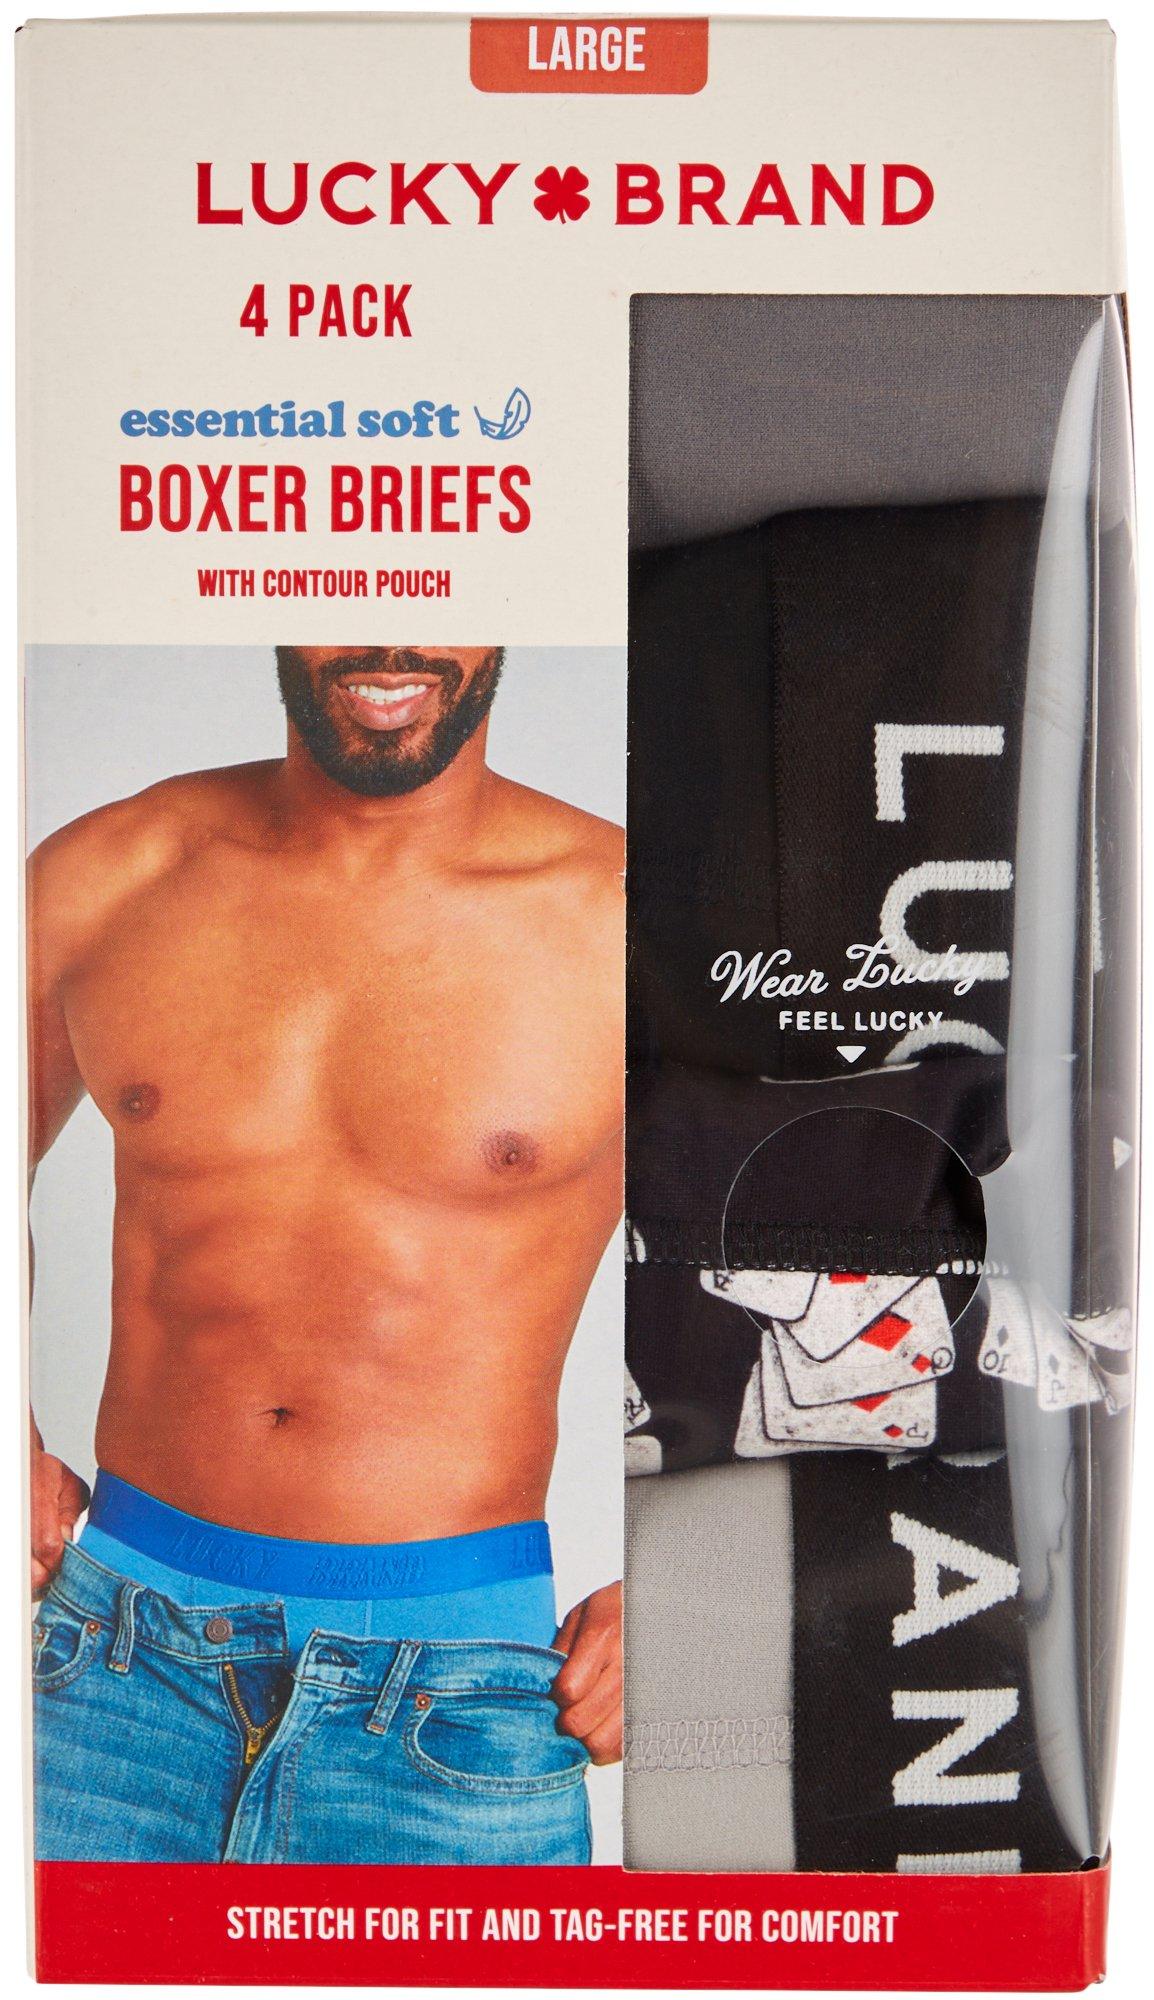 Men's 4 Pk Boxer Briefs